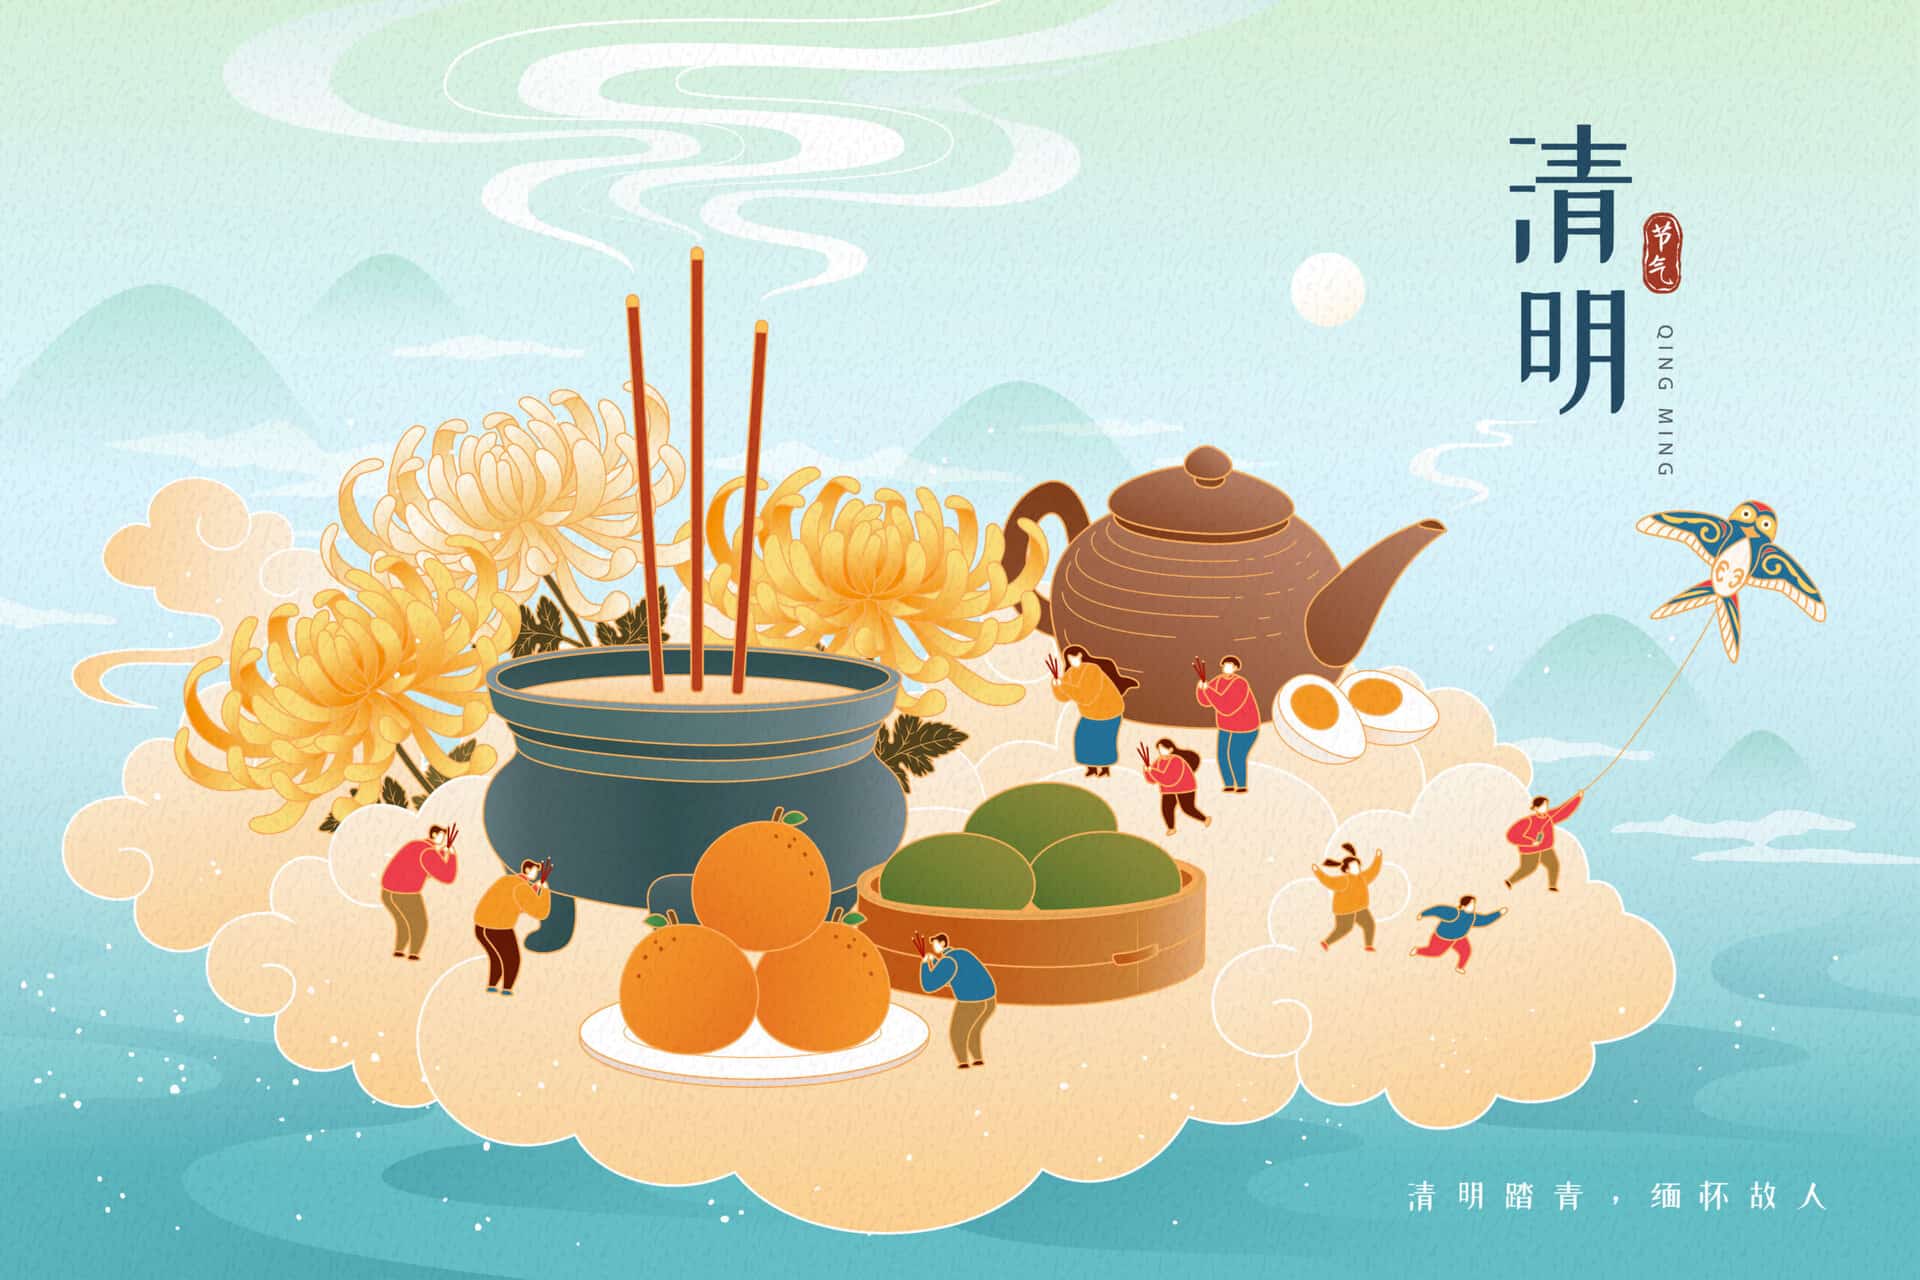 Kinas kulturella traditioner: Qingming-festivalen